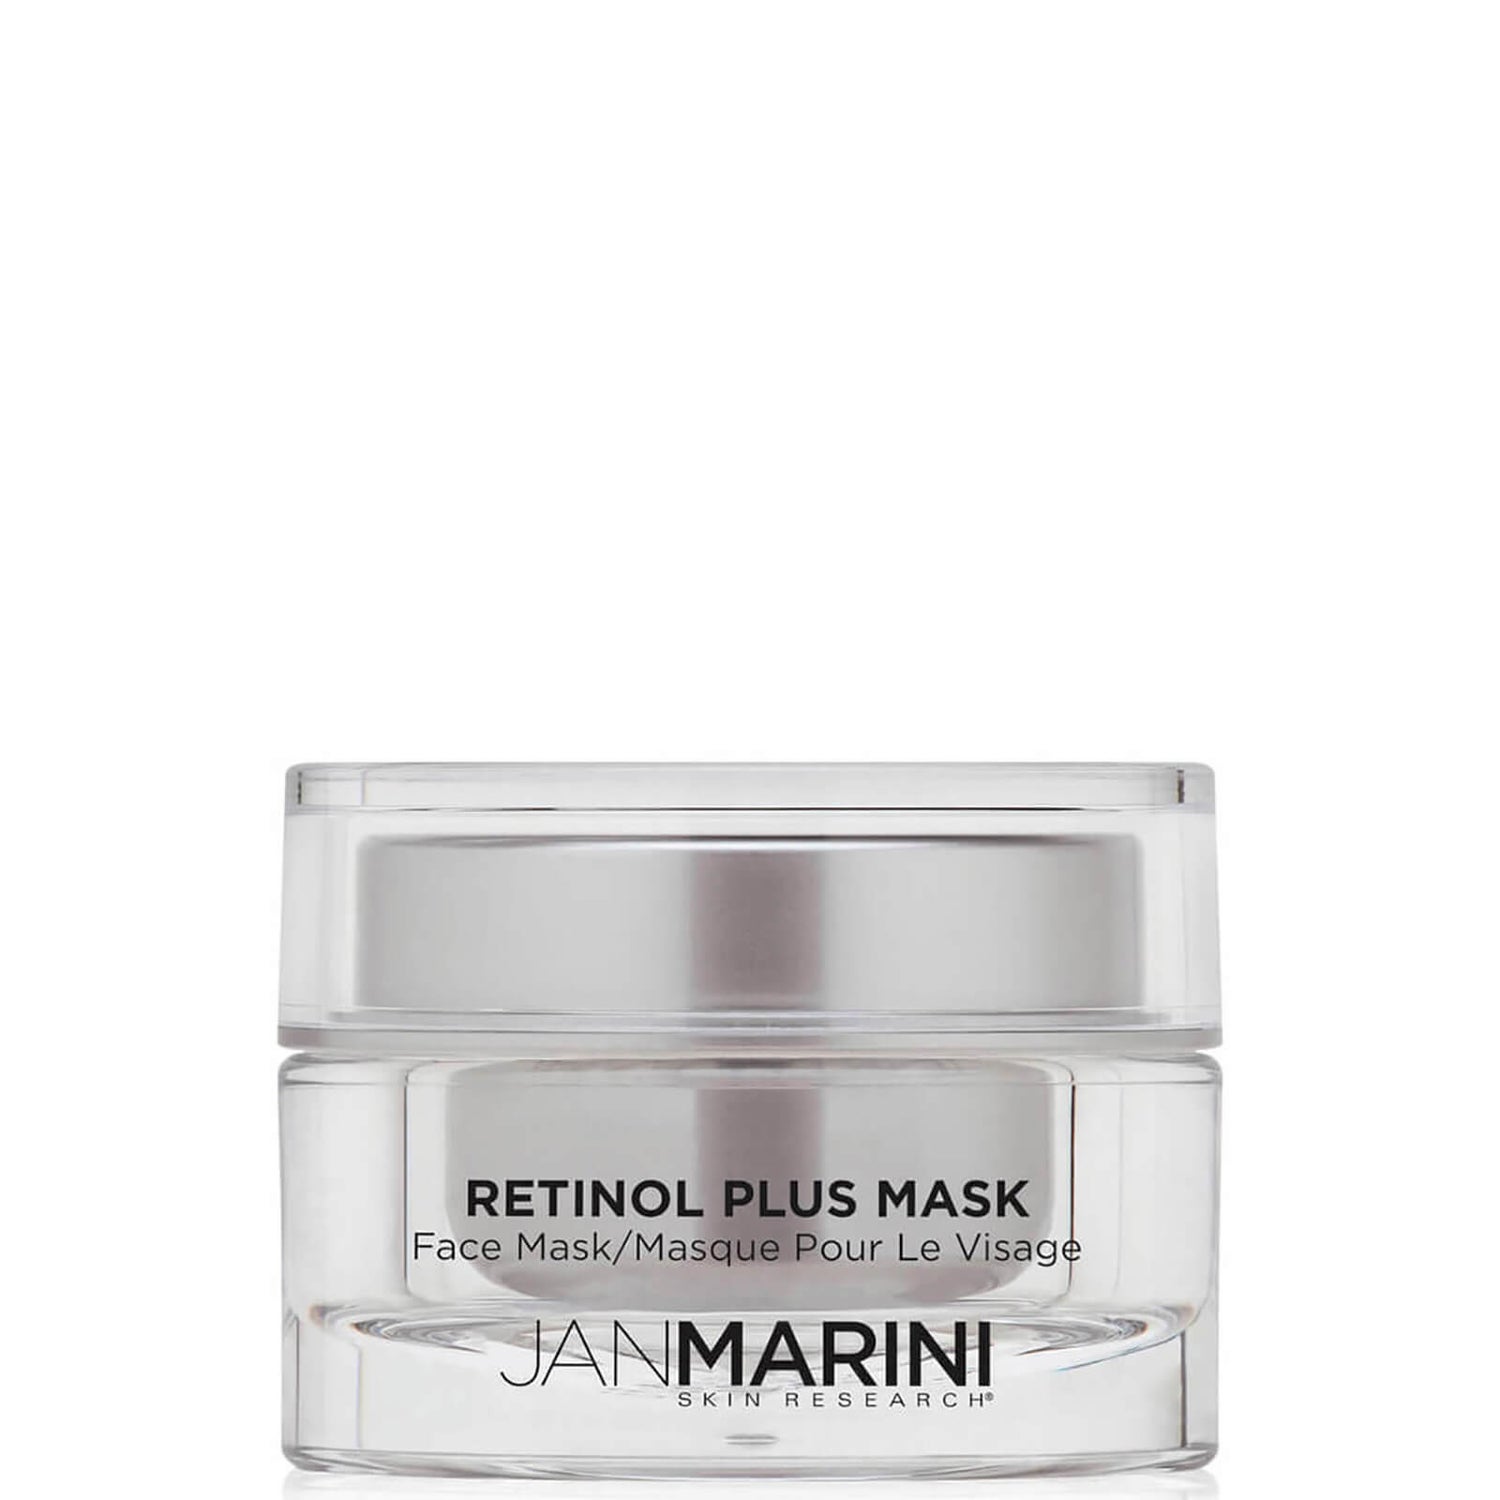 Jan Marini Retinol Plus Mask (1.2 oz.)